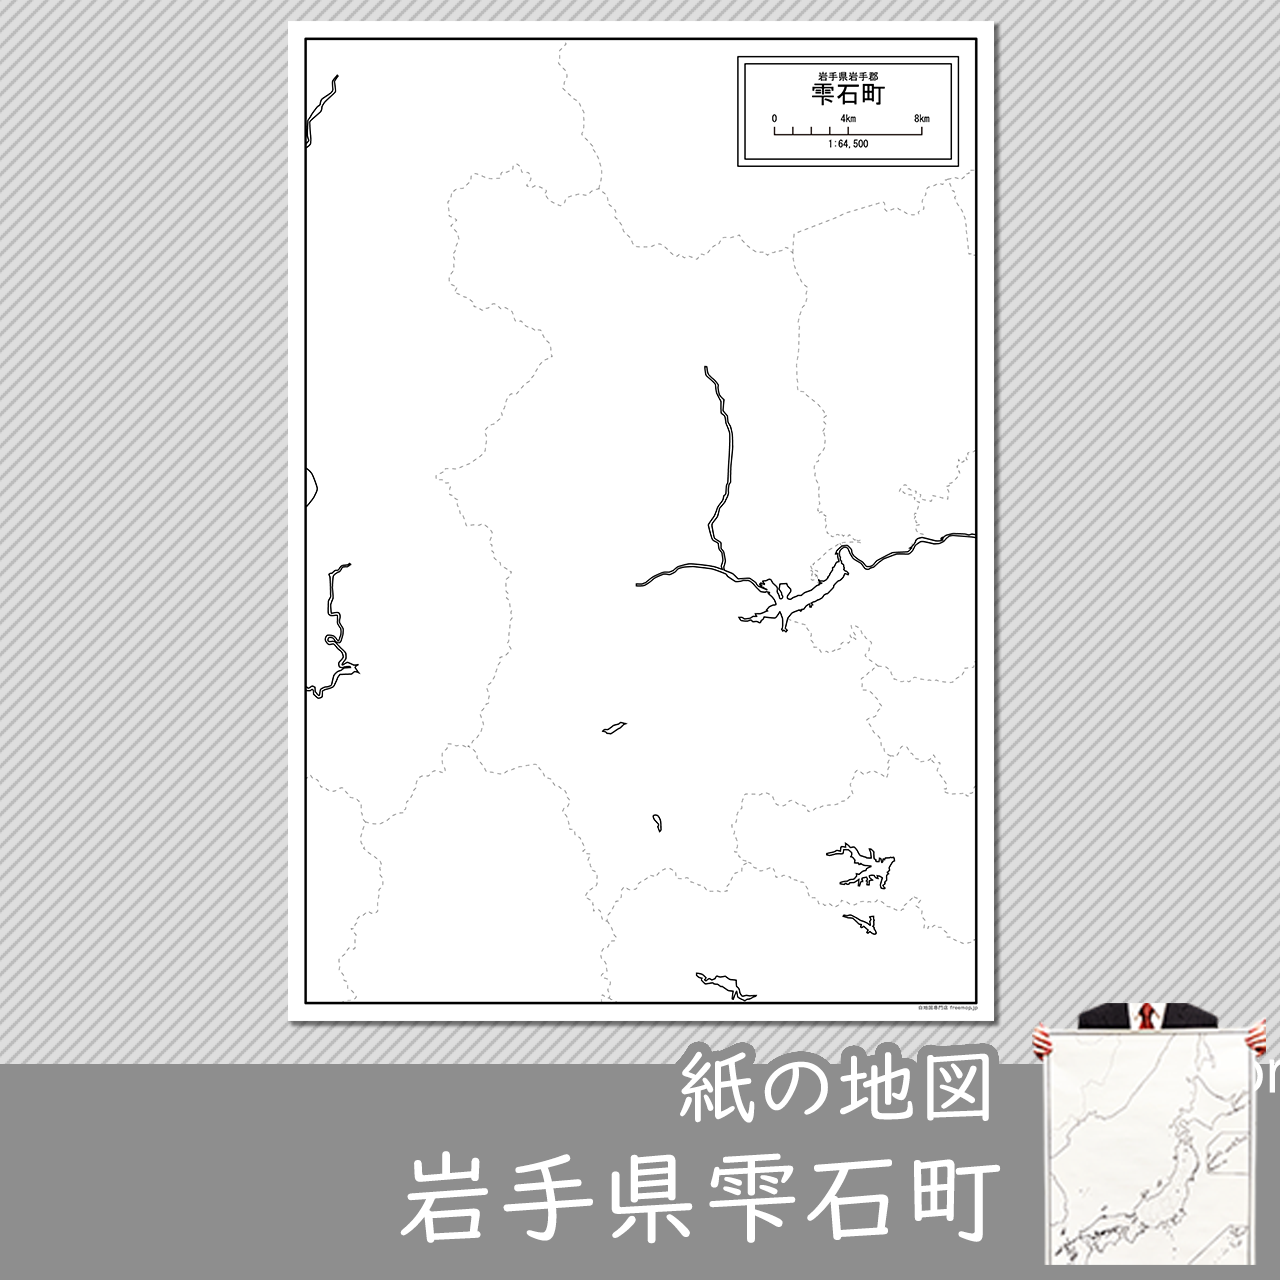 雫石町の紙の白地図のサムネイル